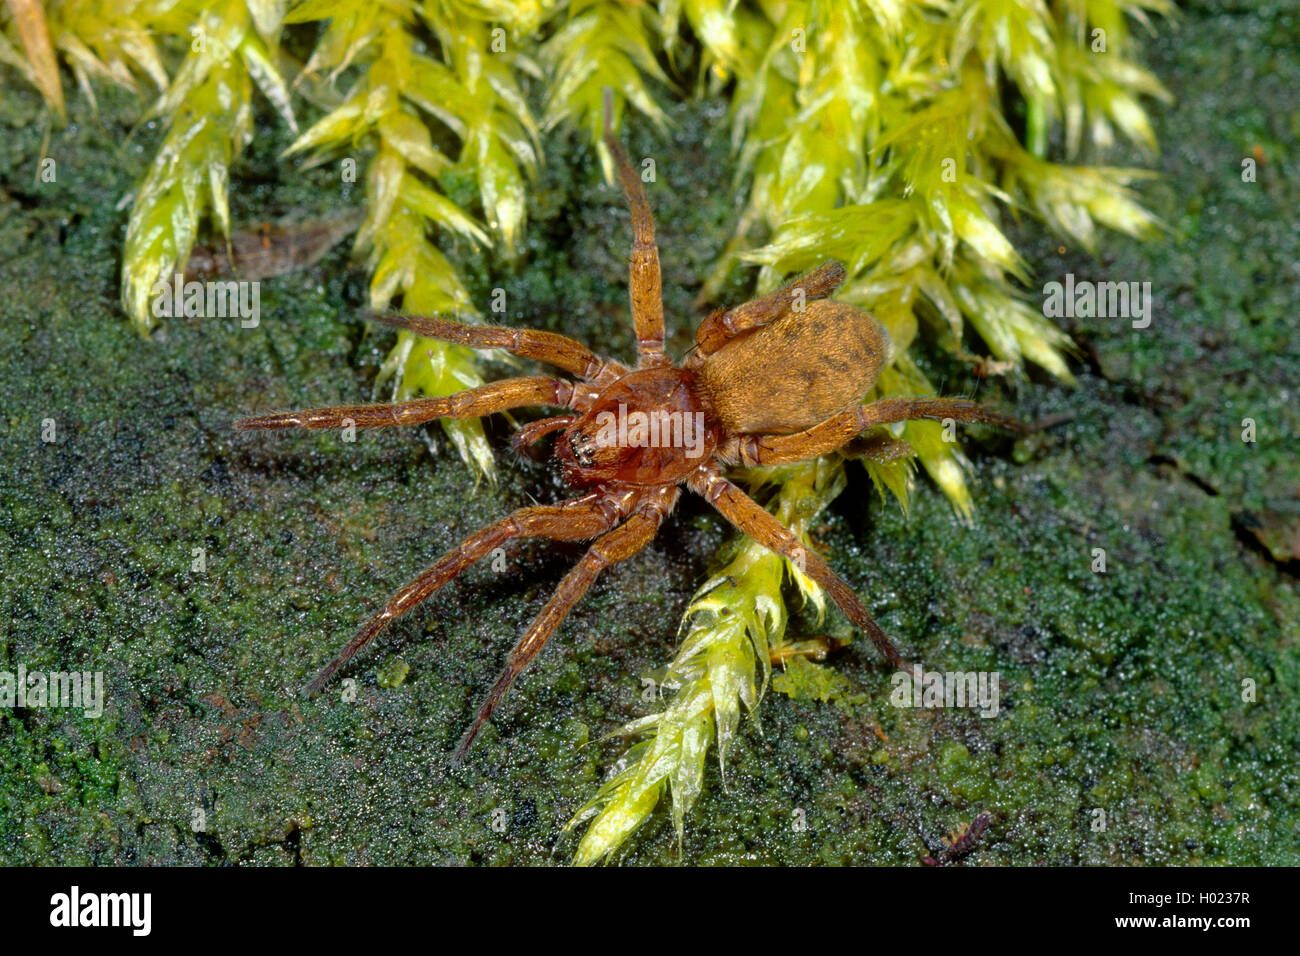 Liocranid sac araignées (Agroeca brunnea), sur le terrain, Allemagne Banque D'Images